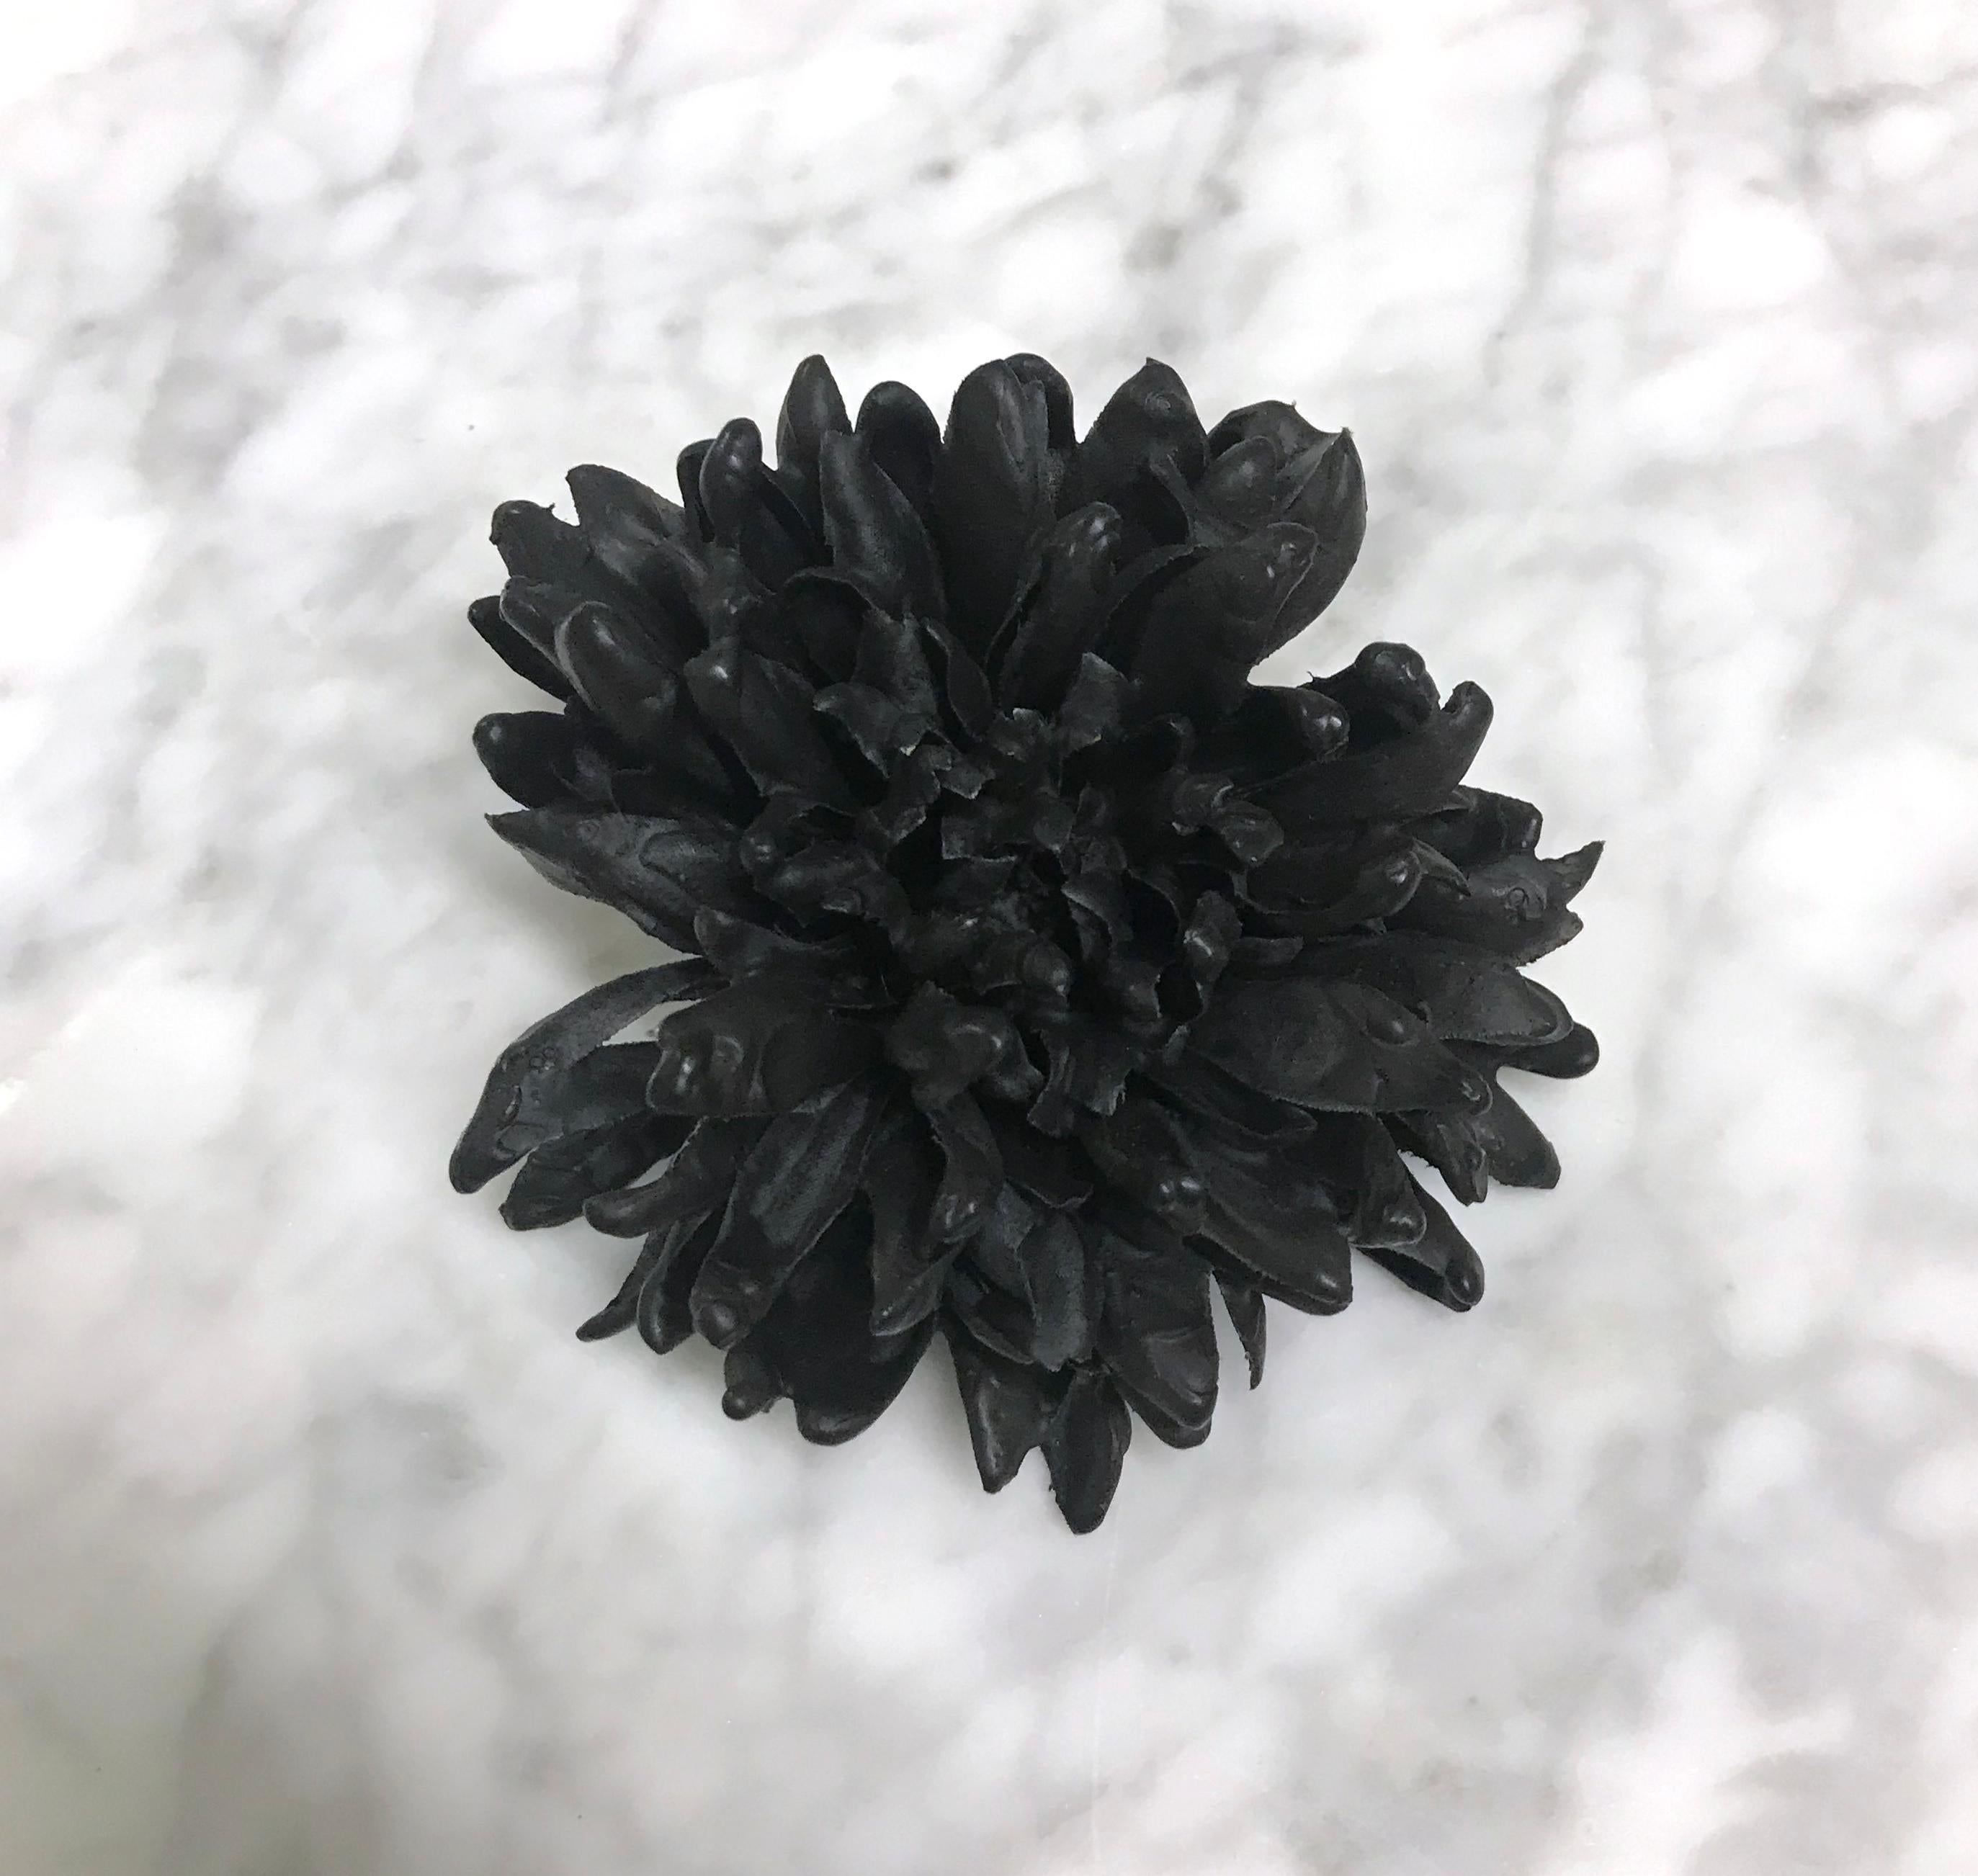 Petah Coyne - Wax Flower, 2005 - Sculpture by petah coyne